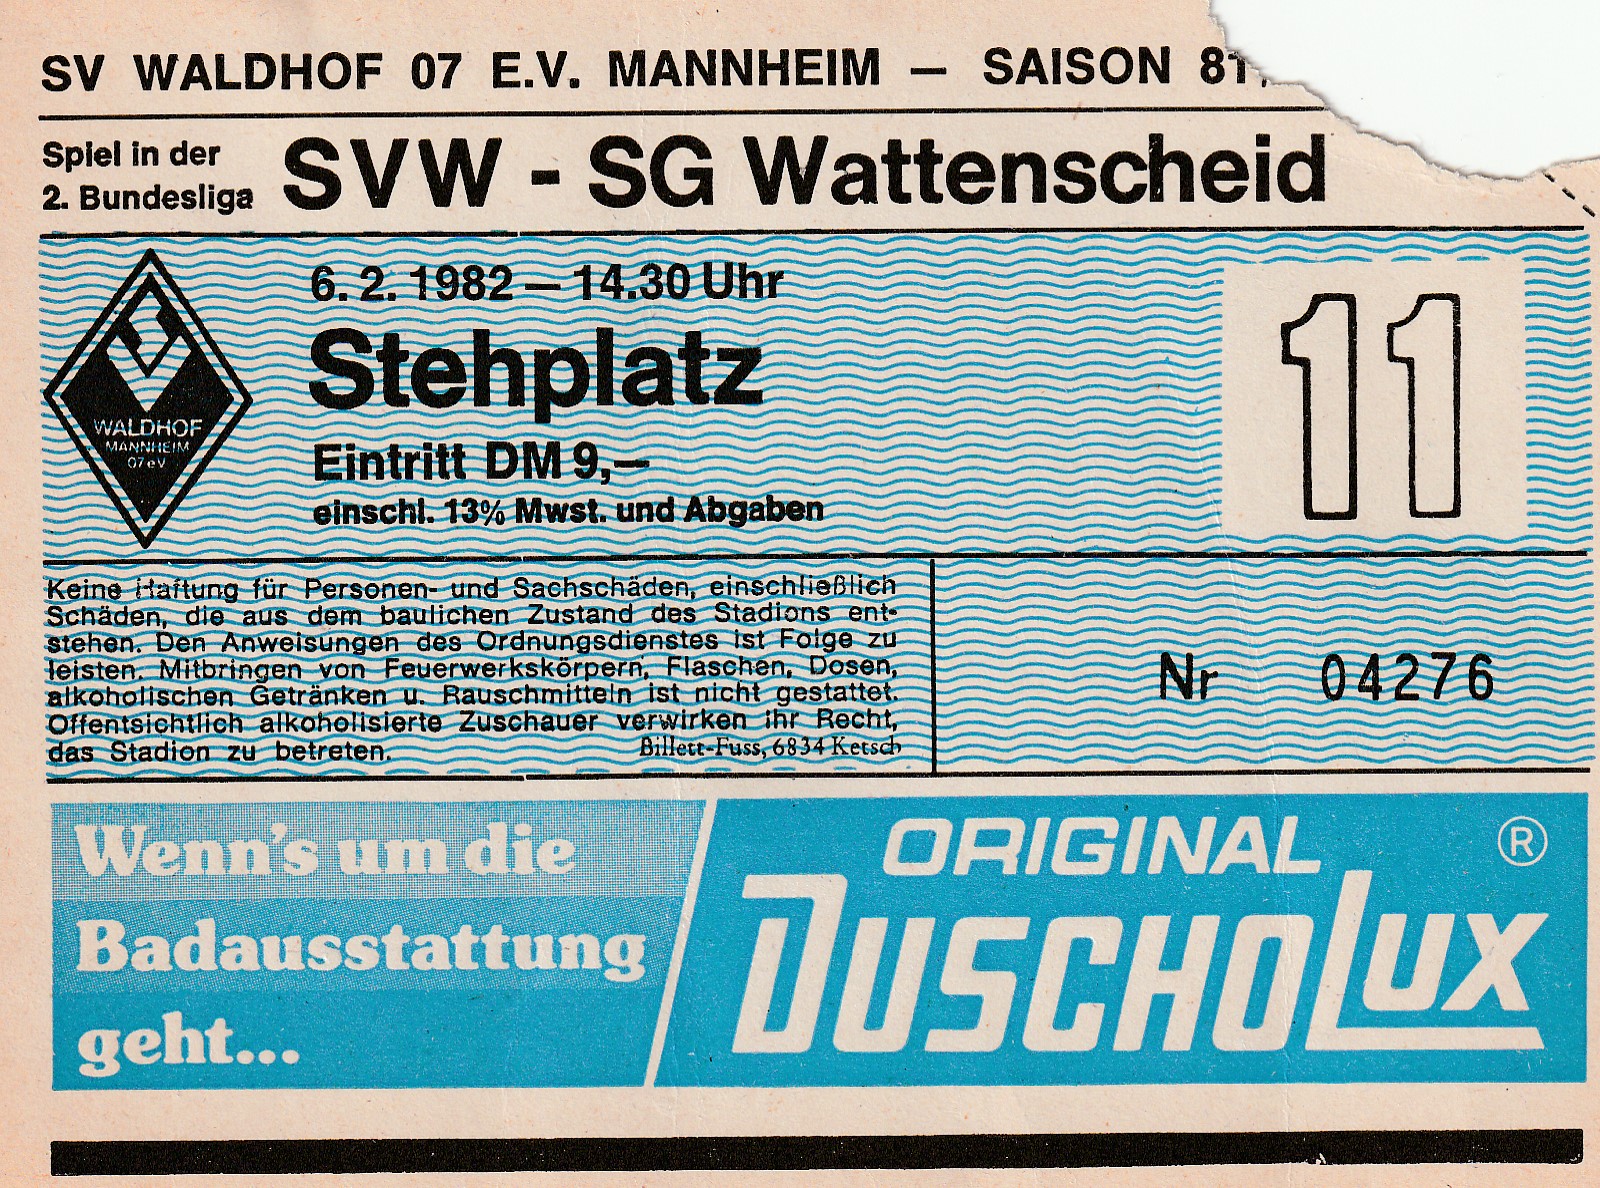 SV Waldhof - SG Wattenscheid 09 1-0060282.jpeg